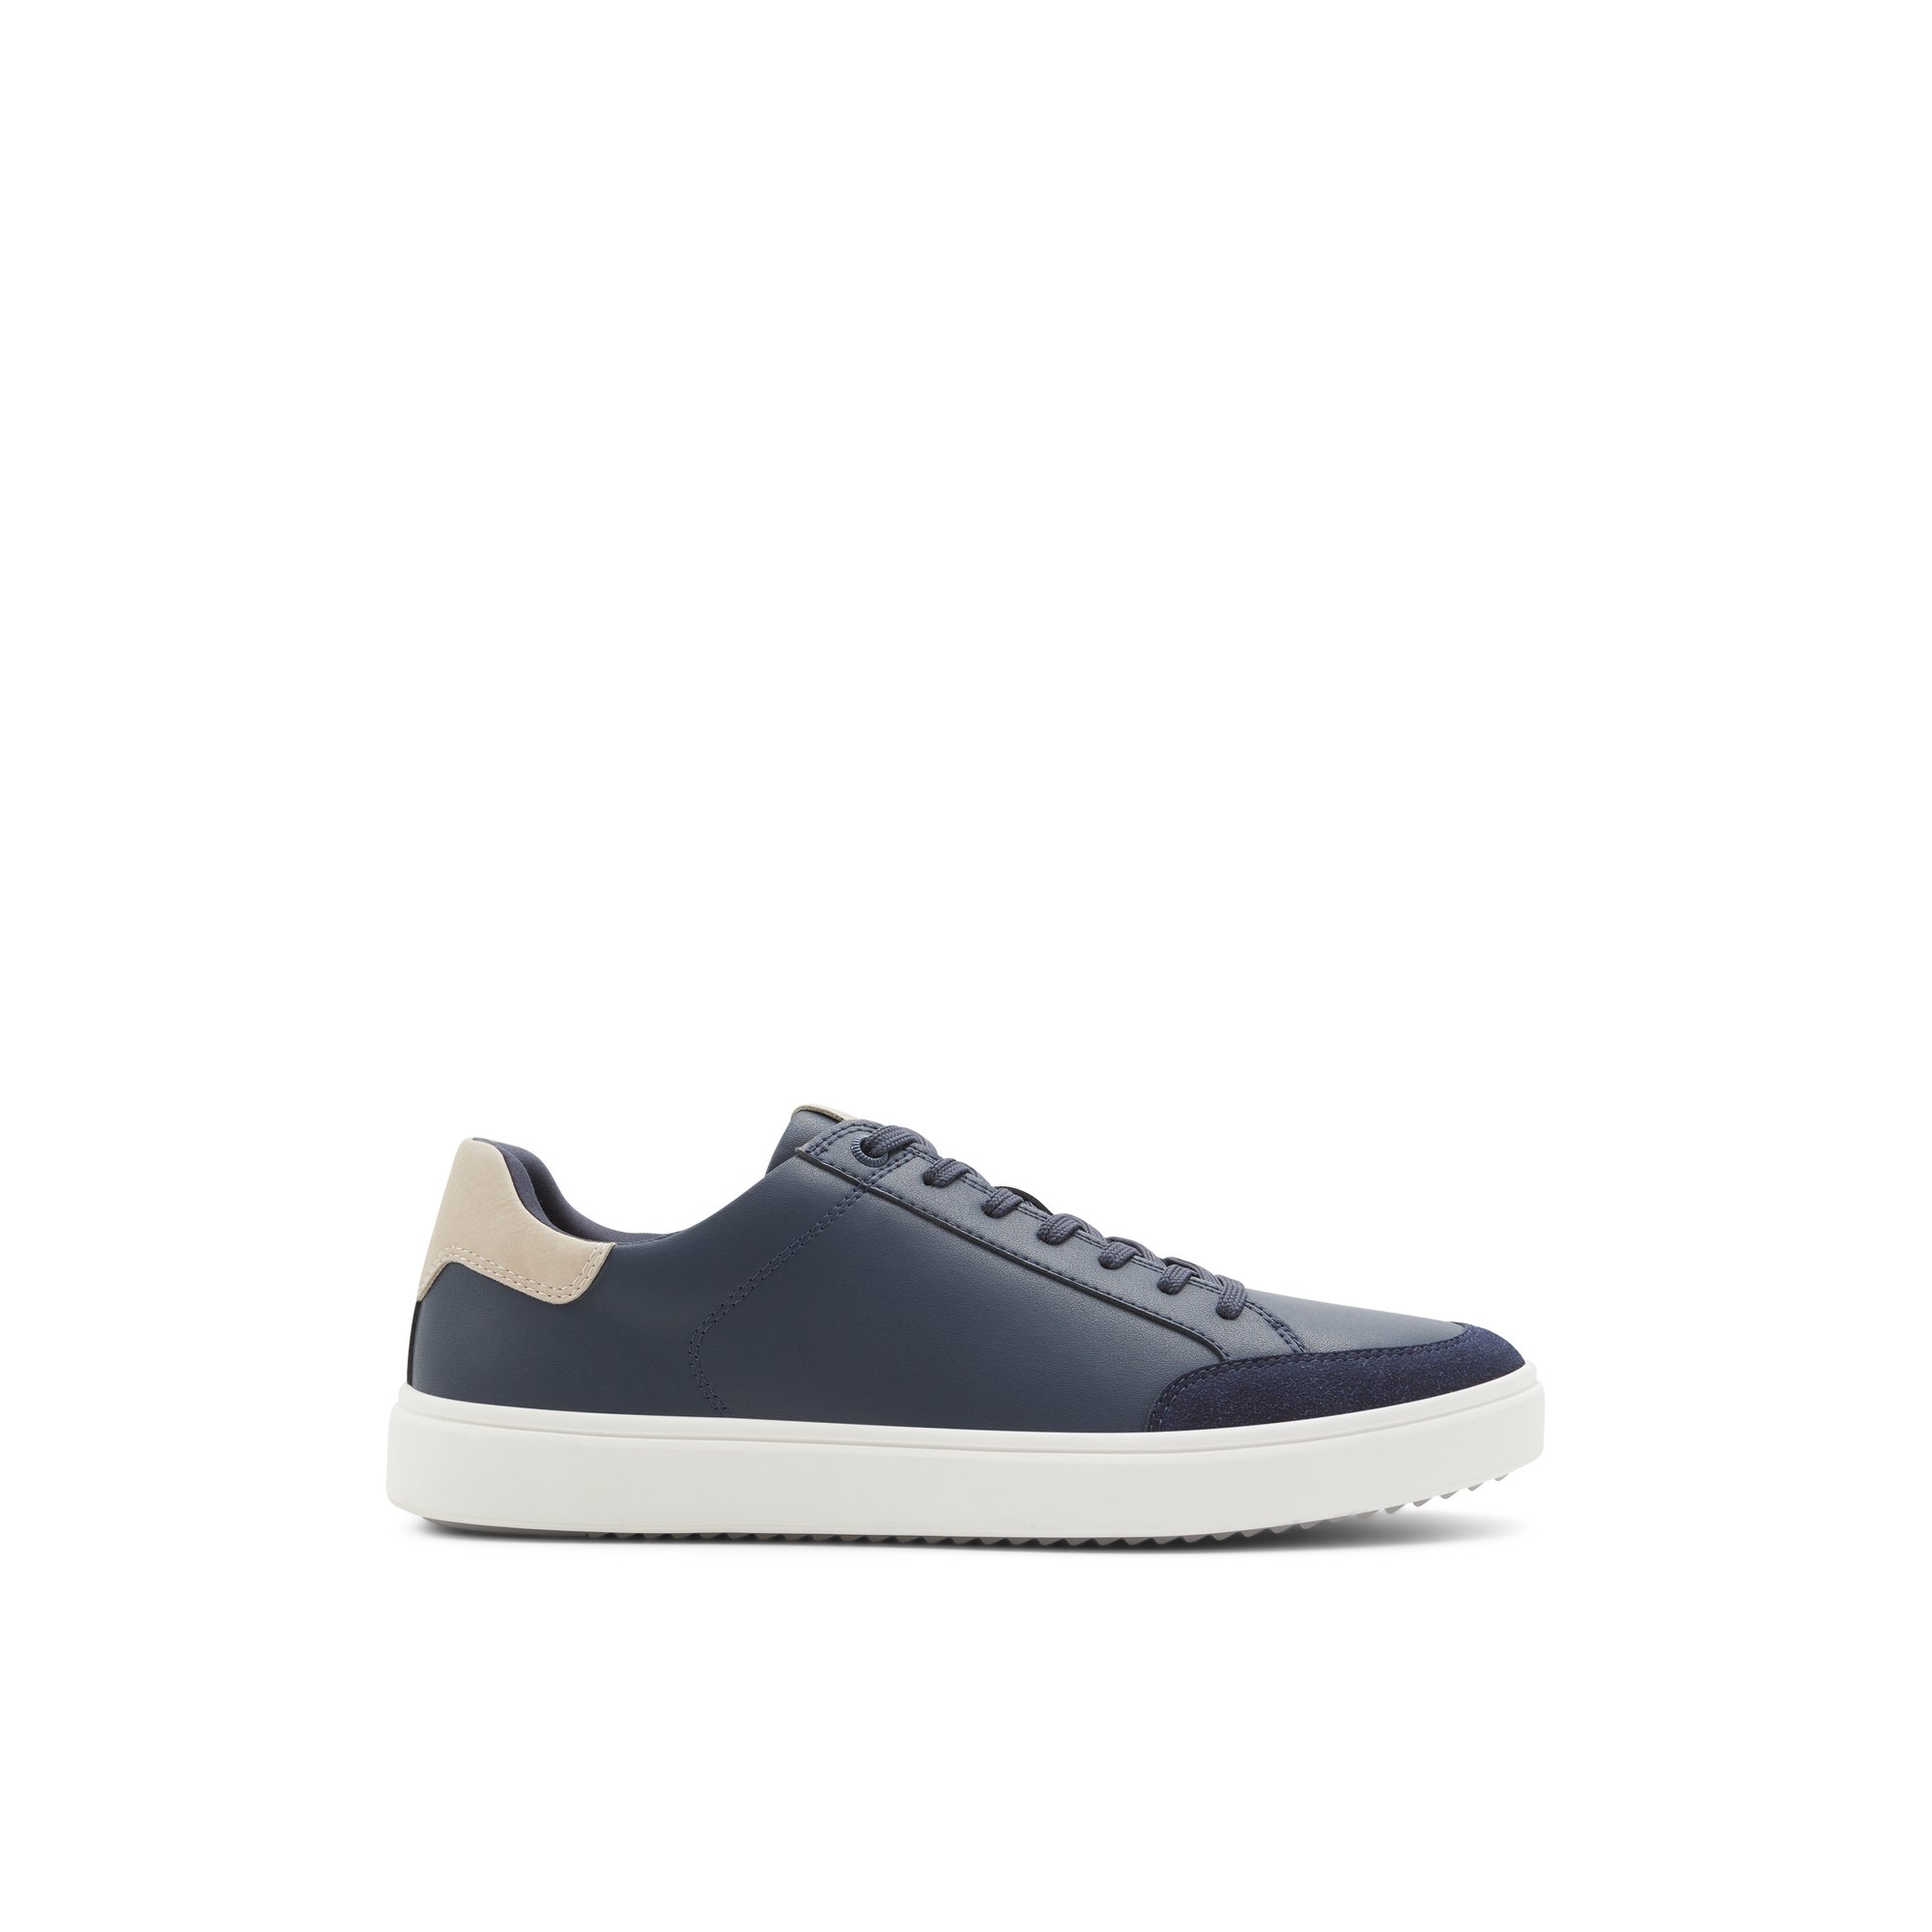 ALDO Courtspec - Men's Low Top Sneakers - Blue